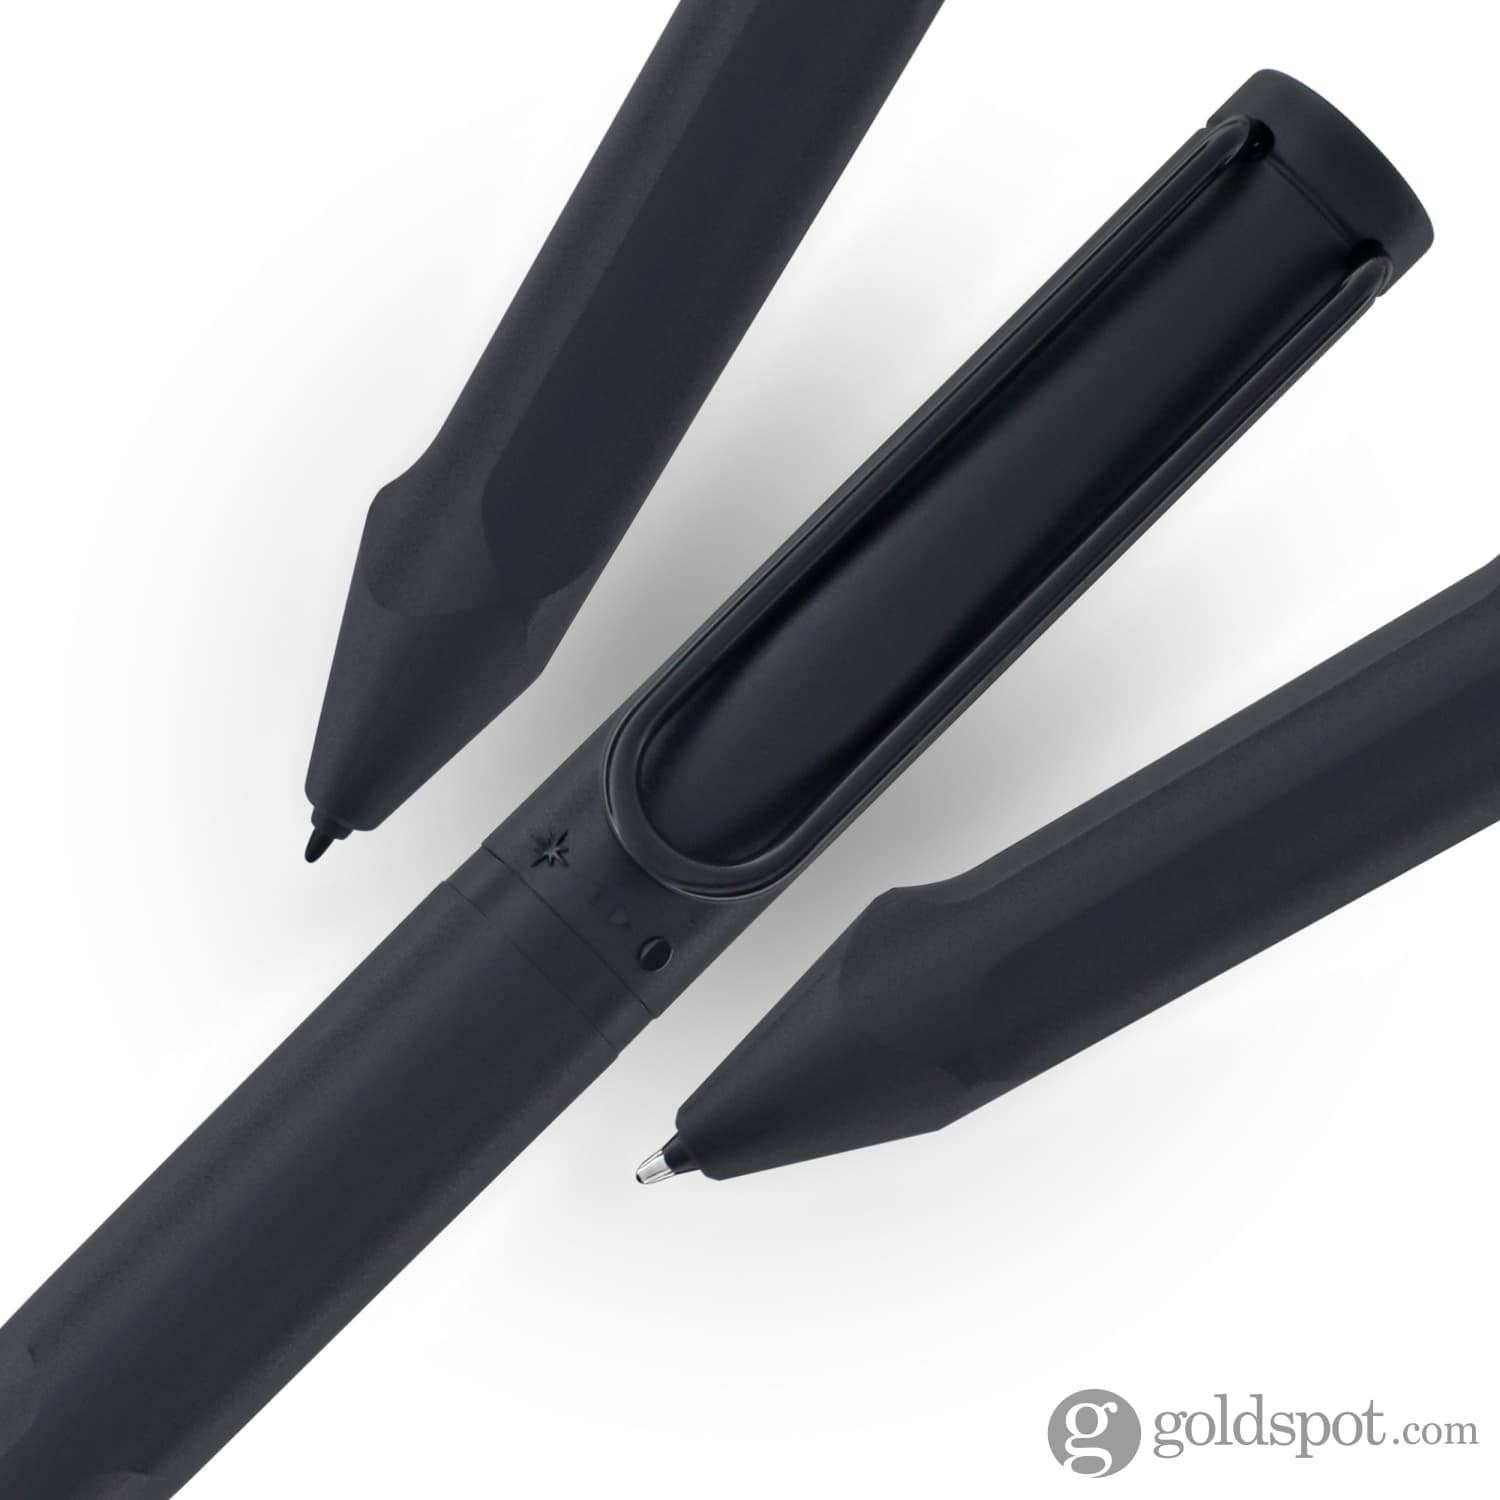 Lamy Safari EMR Twinpen Digital Writing Ballpoint Pen in All Black